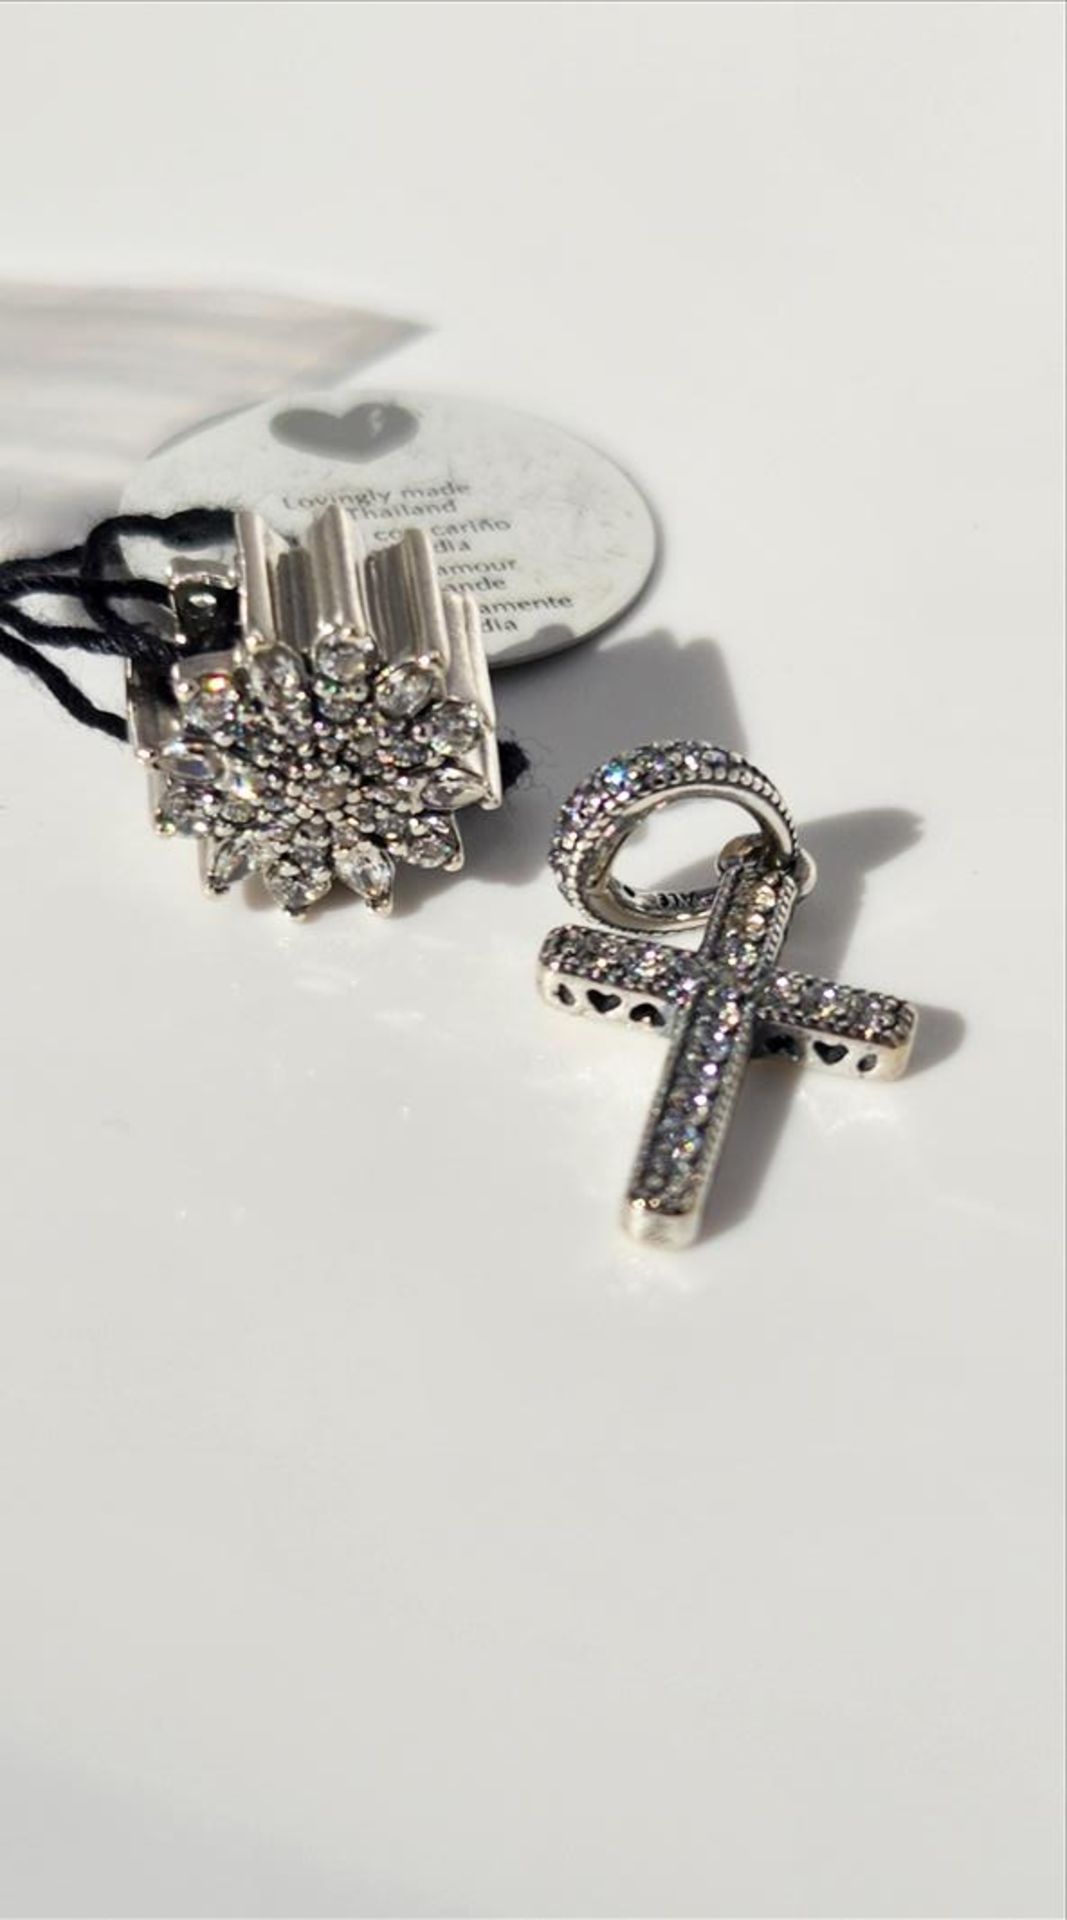 Pandora crystal charm and pendant